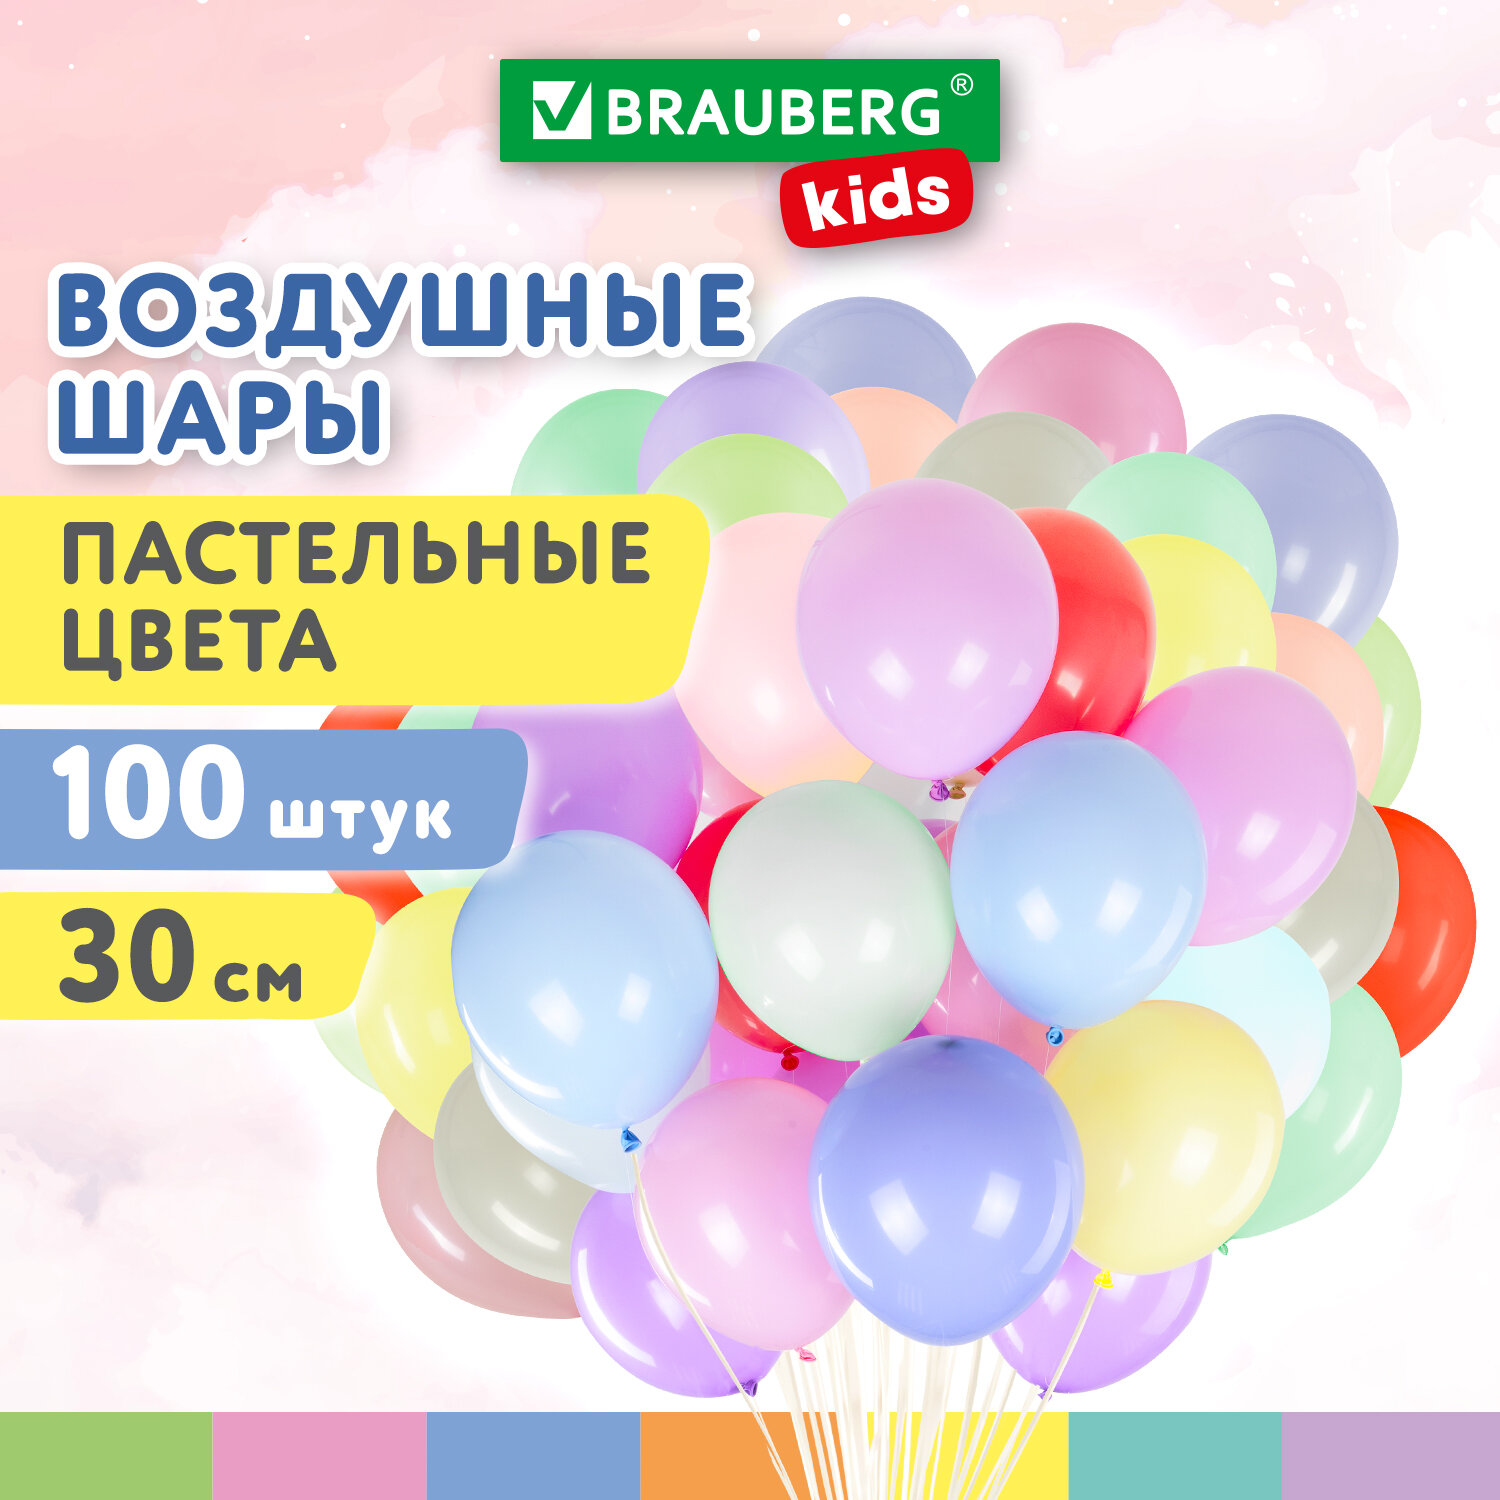 Шарики воздушные Brauberg Kids 591879 набор на день рождения, для фотозоны, 30 см, 100 шт